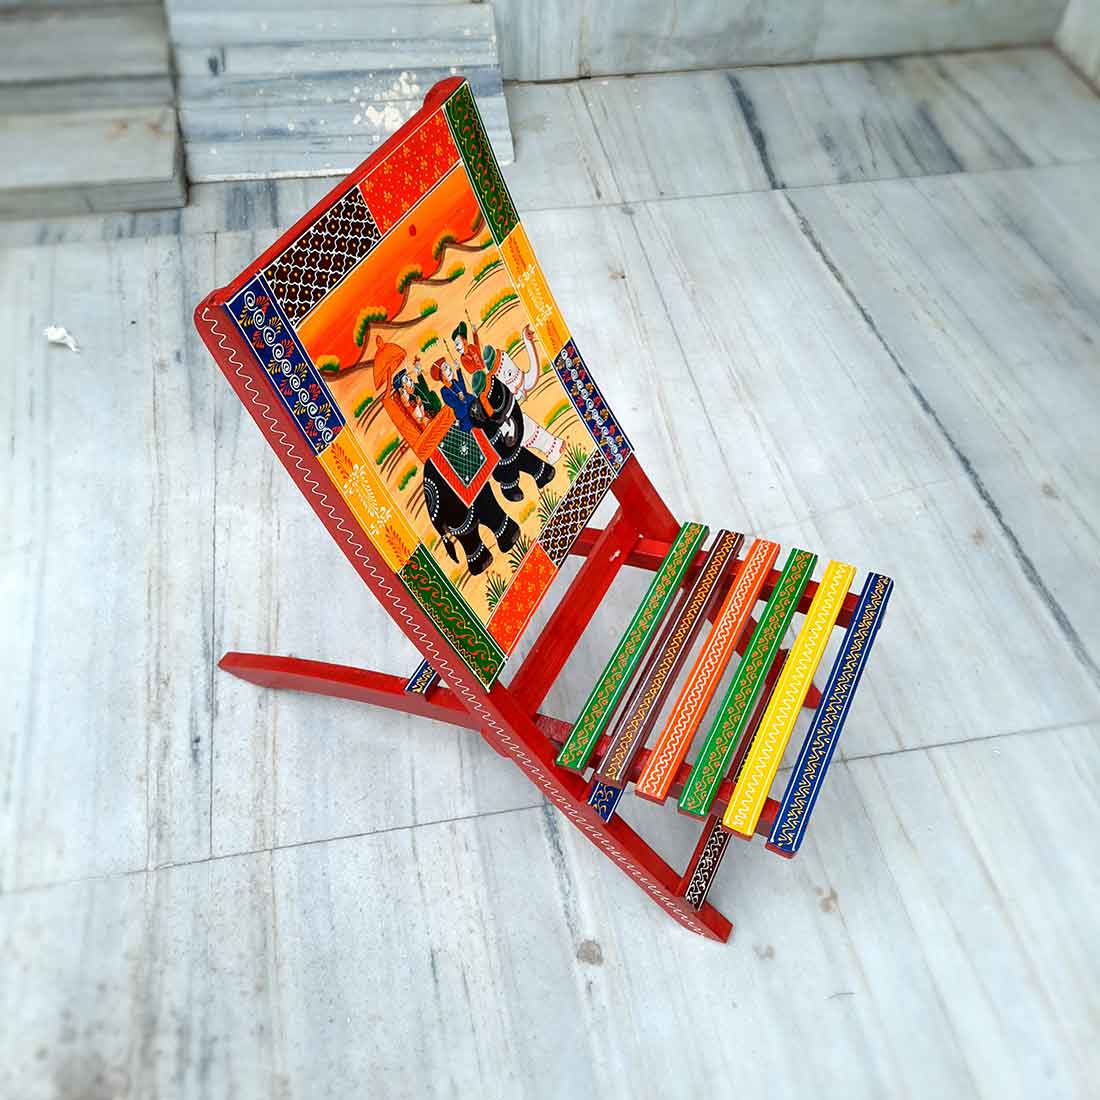 Wooden Chair Set of 2  - For Outdoor | Indoor | Balcony | Garden -  33 inch - ApkaMart